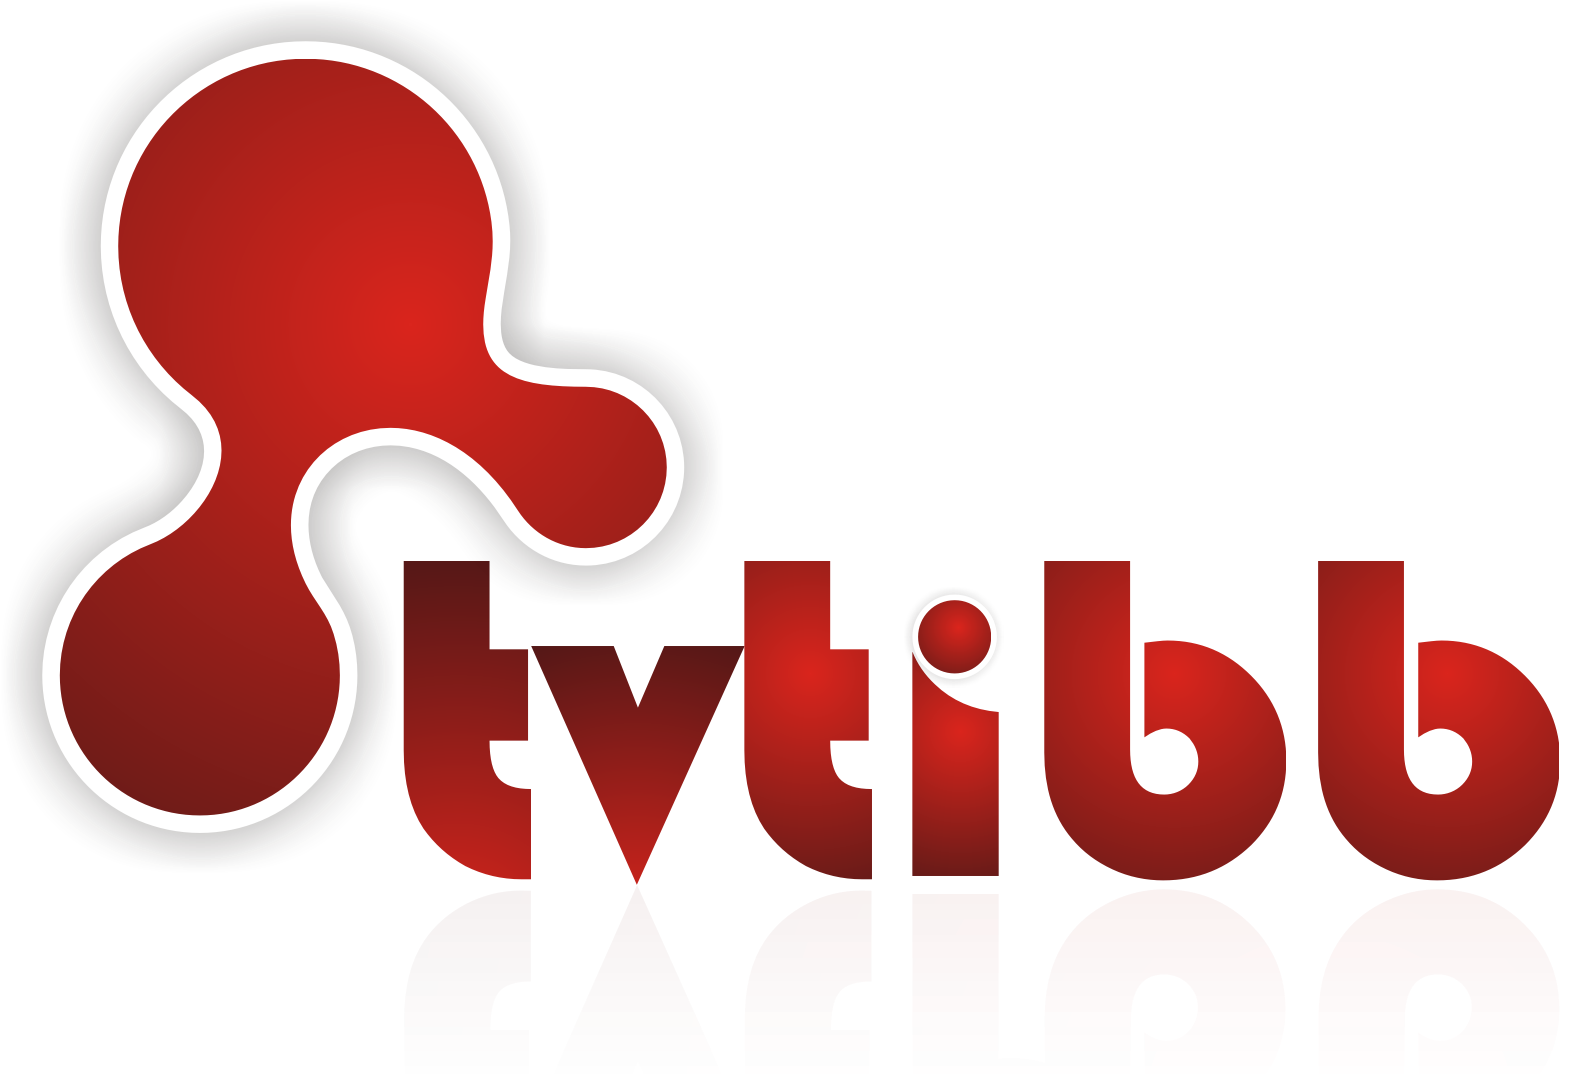 Azərbaycanda ilk tibb və sağlamlıq kanalı olan www.tvtibb.az internet televiziyası fəaliyyətə başlayacaq